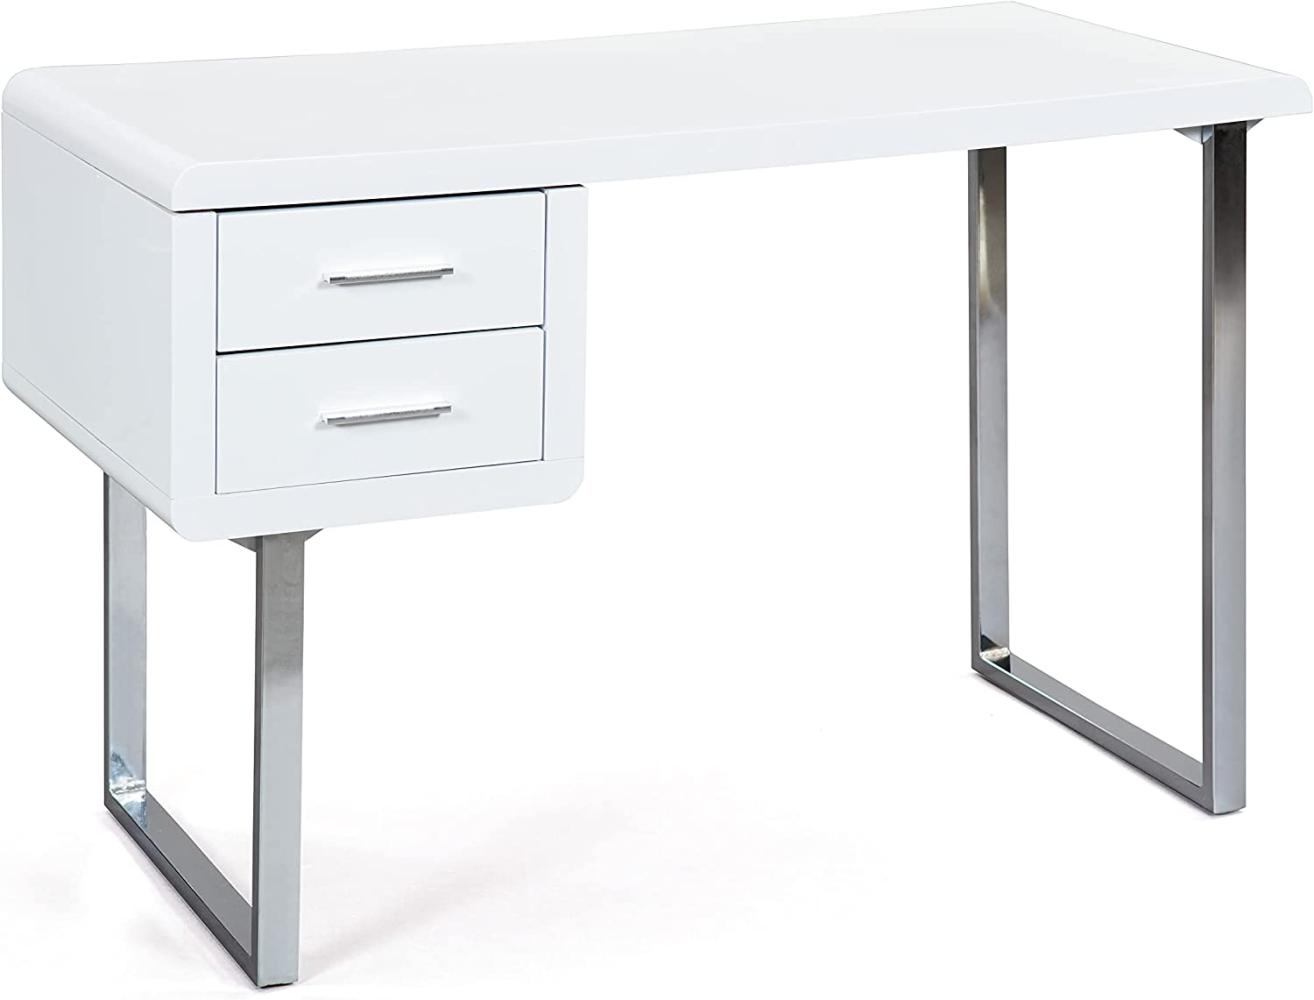 'Claude' Schreibtisch mit 2 Schubladen, Weiß Hochglanz/Metall verchromt, 76 x 55 x 120 cm Bild 1